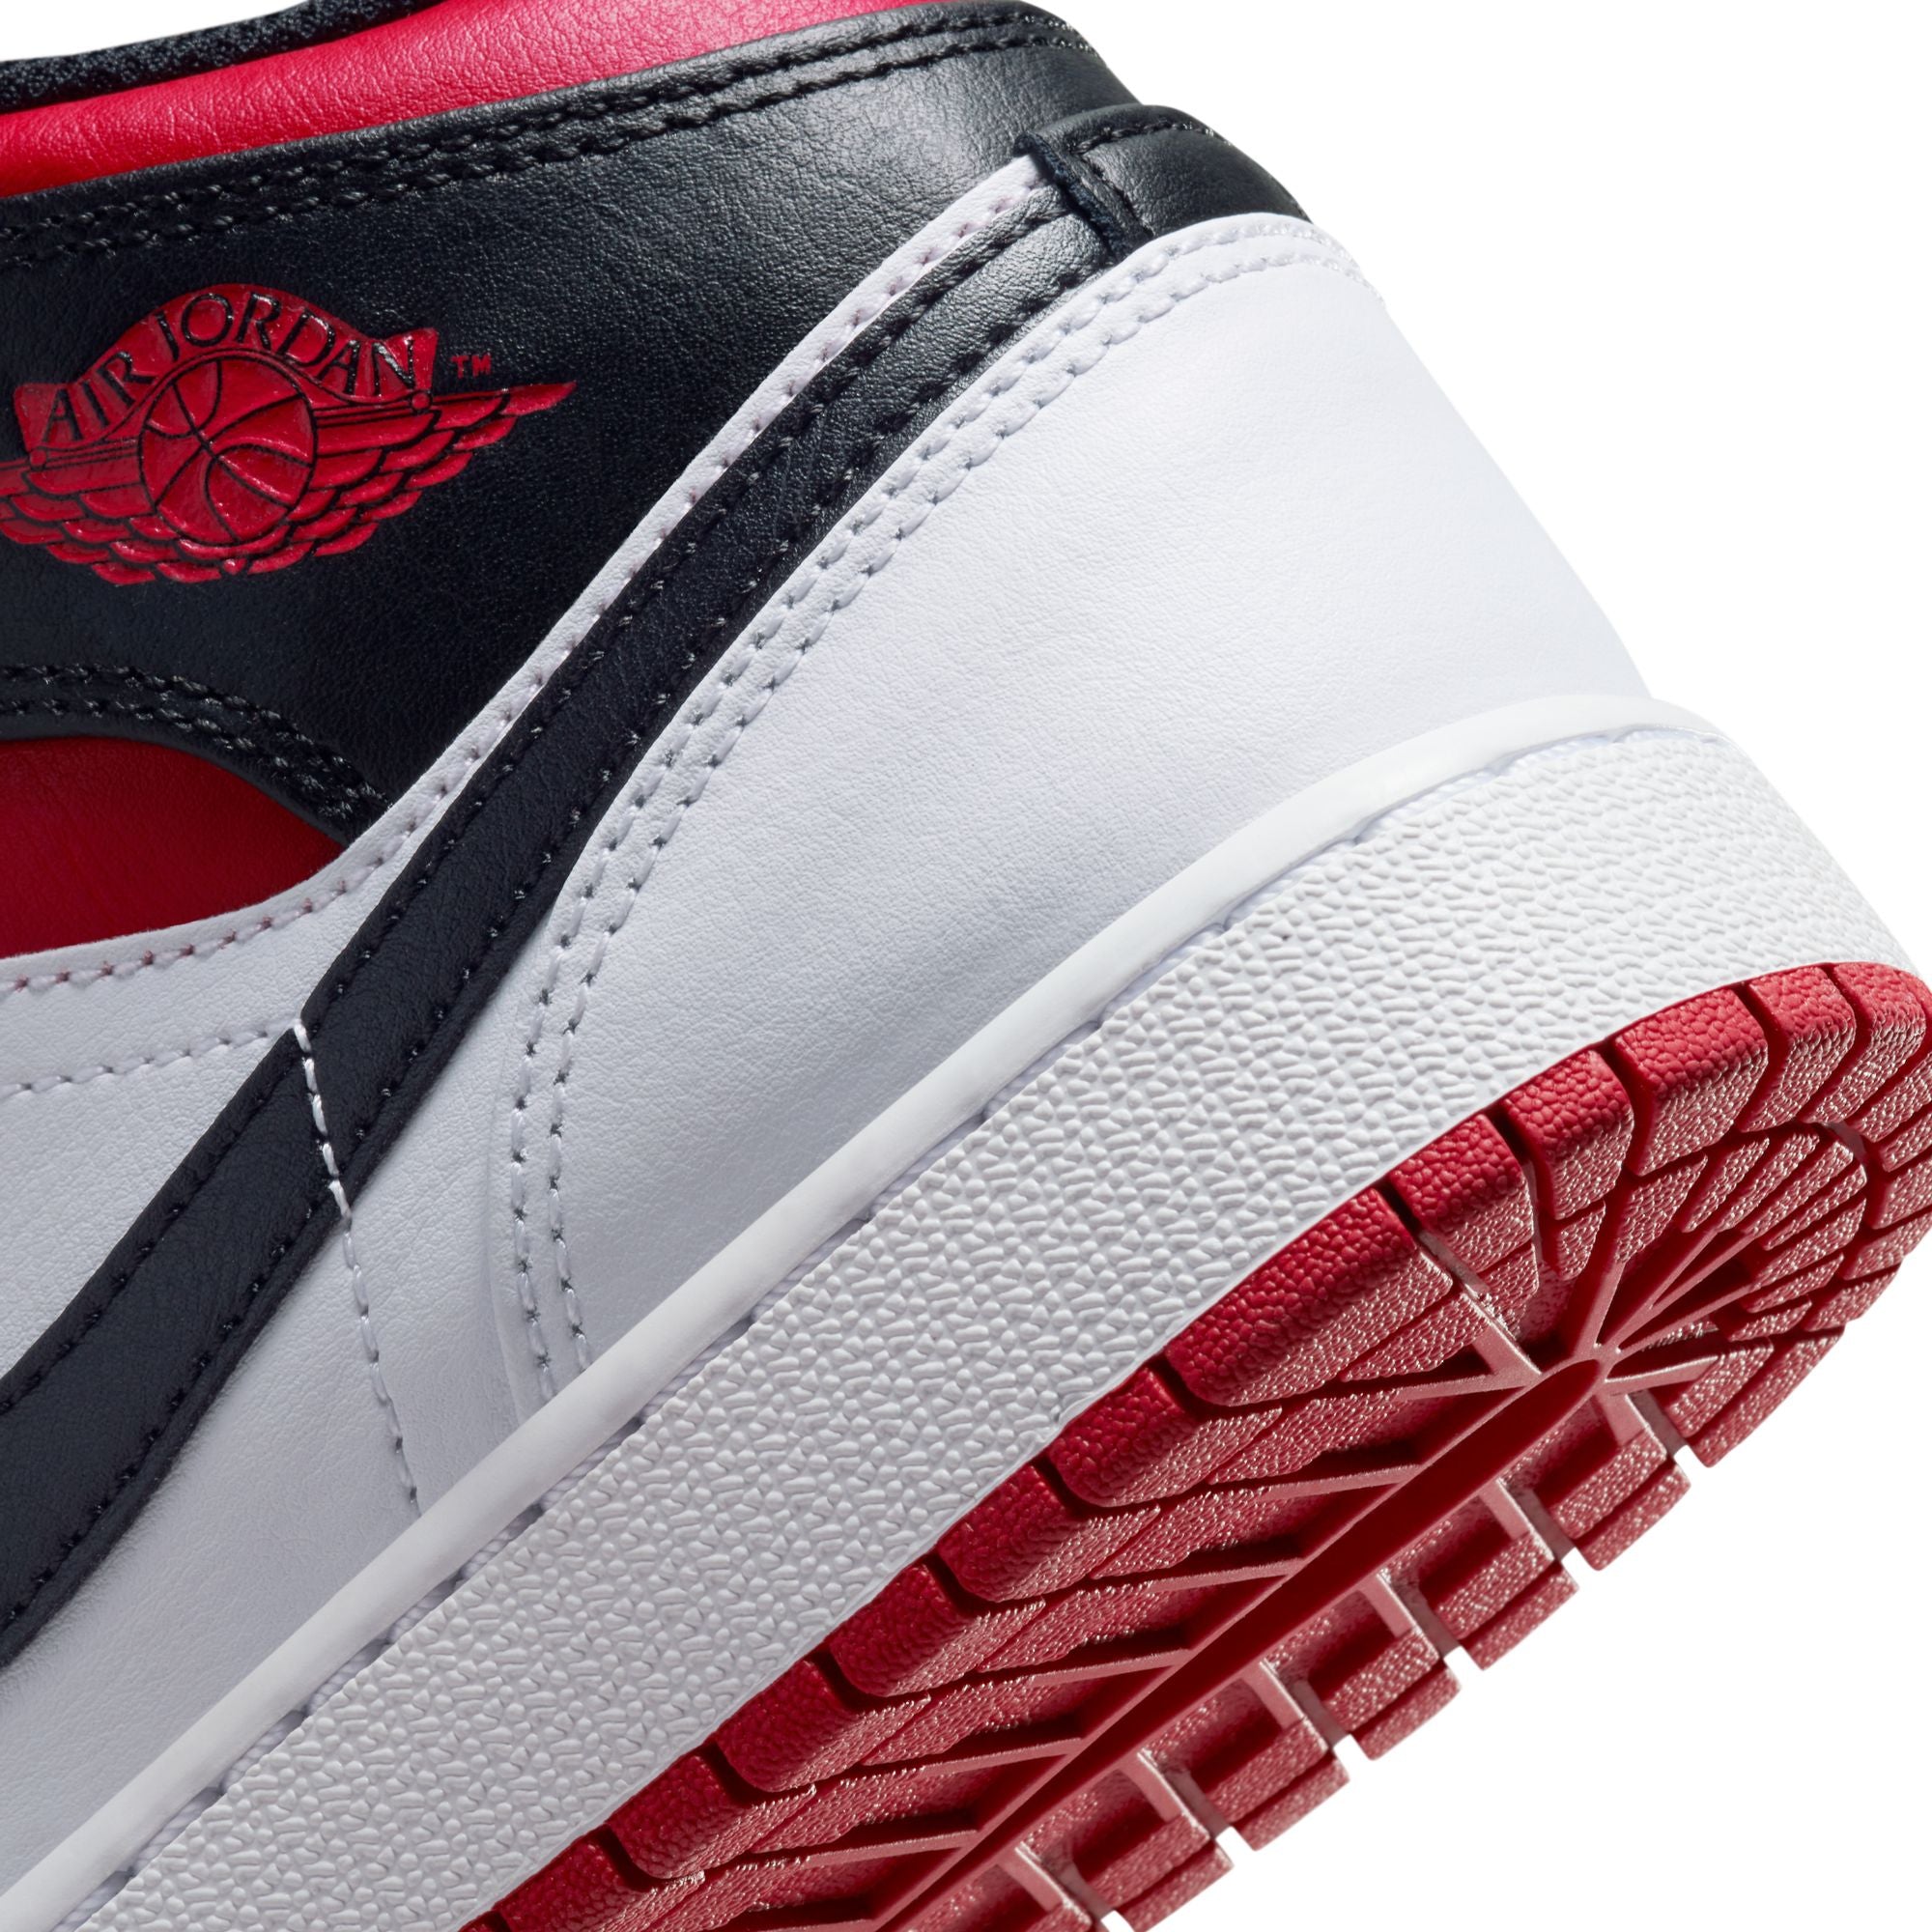 Nike Air Jordan 1 MID (GS)